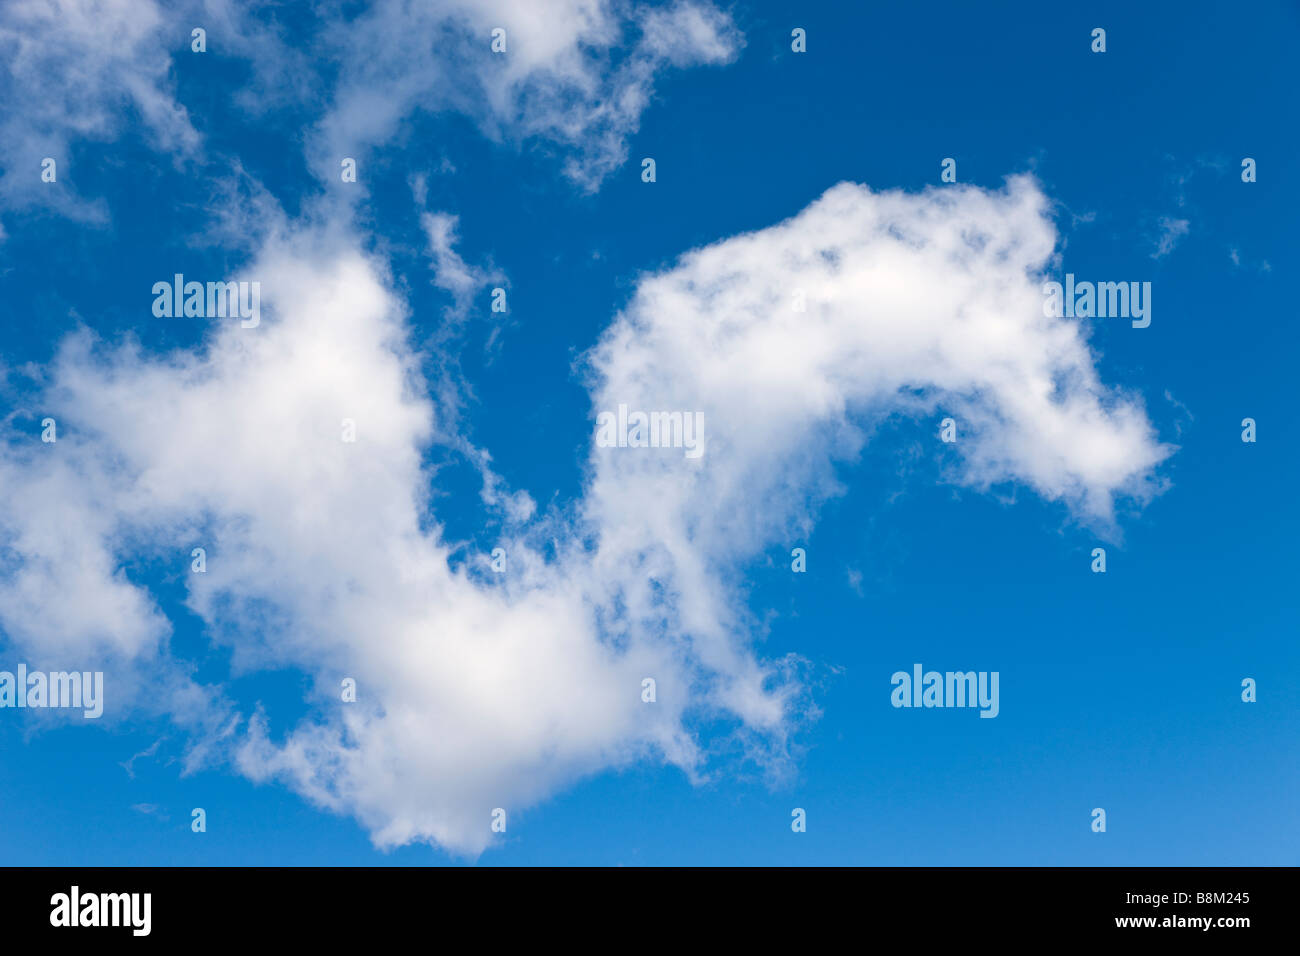 Esponjosas nubes blancas en el cielo azul Foto de stock